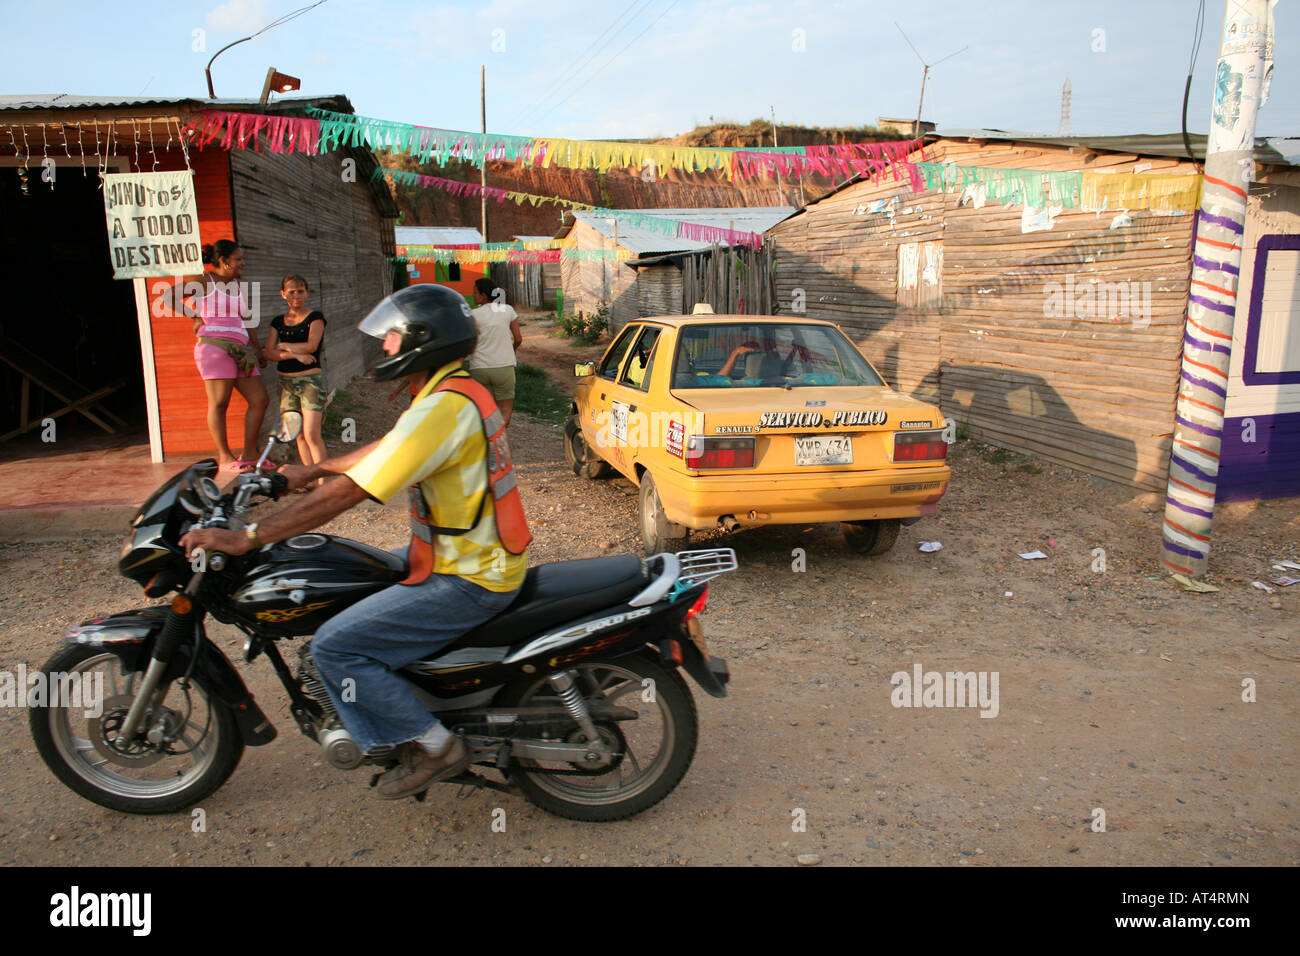 Transport en taxi en Colombie souvent 5 à 6 personnes s'asseoir sur une moto Banque D'Images